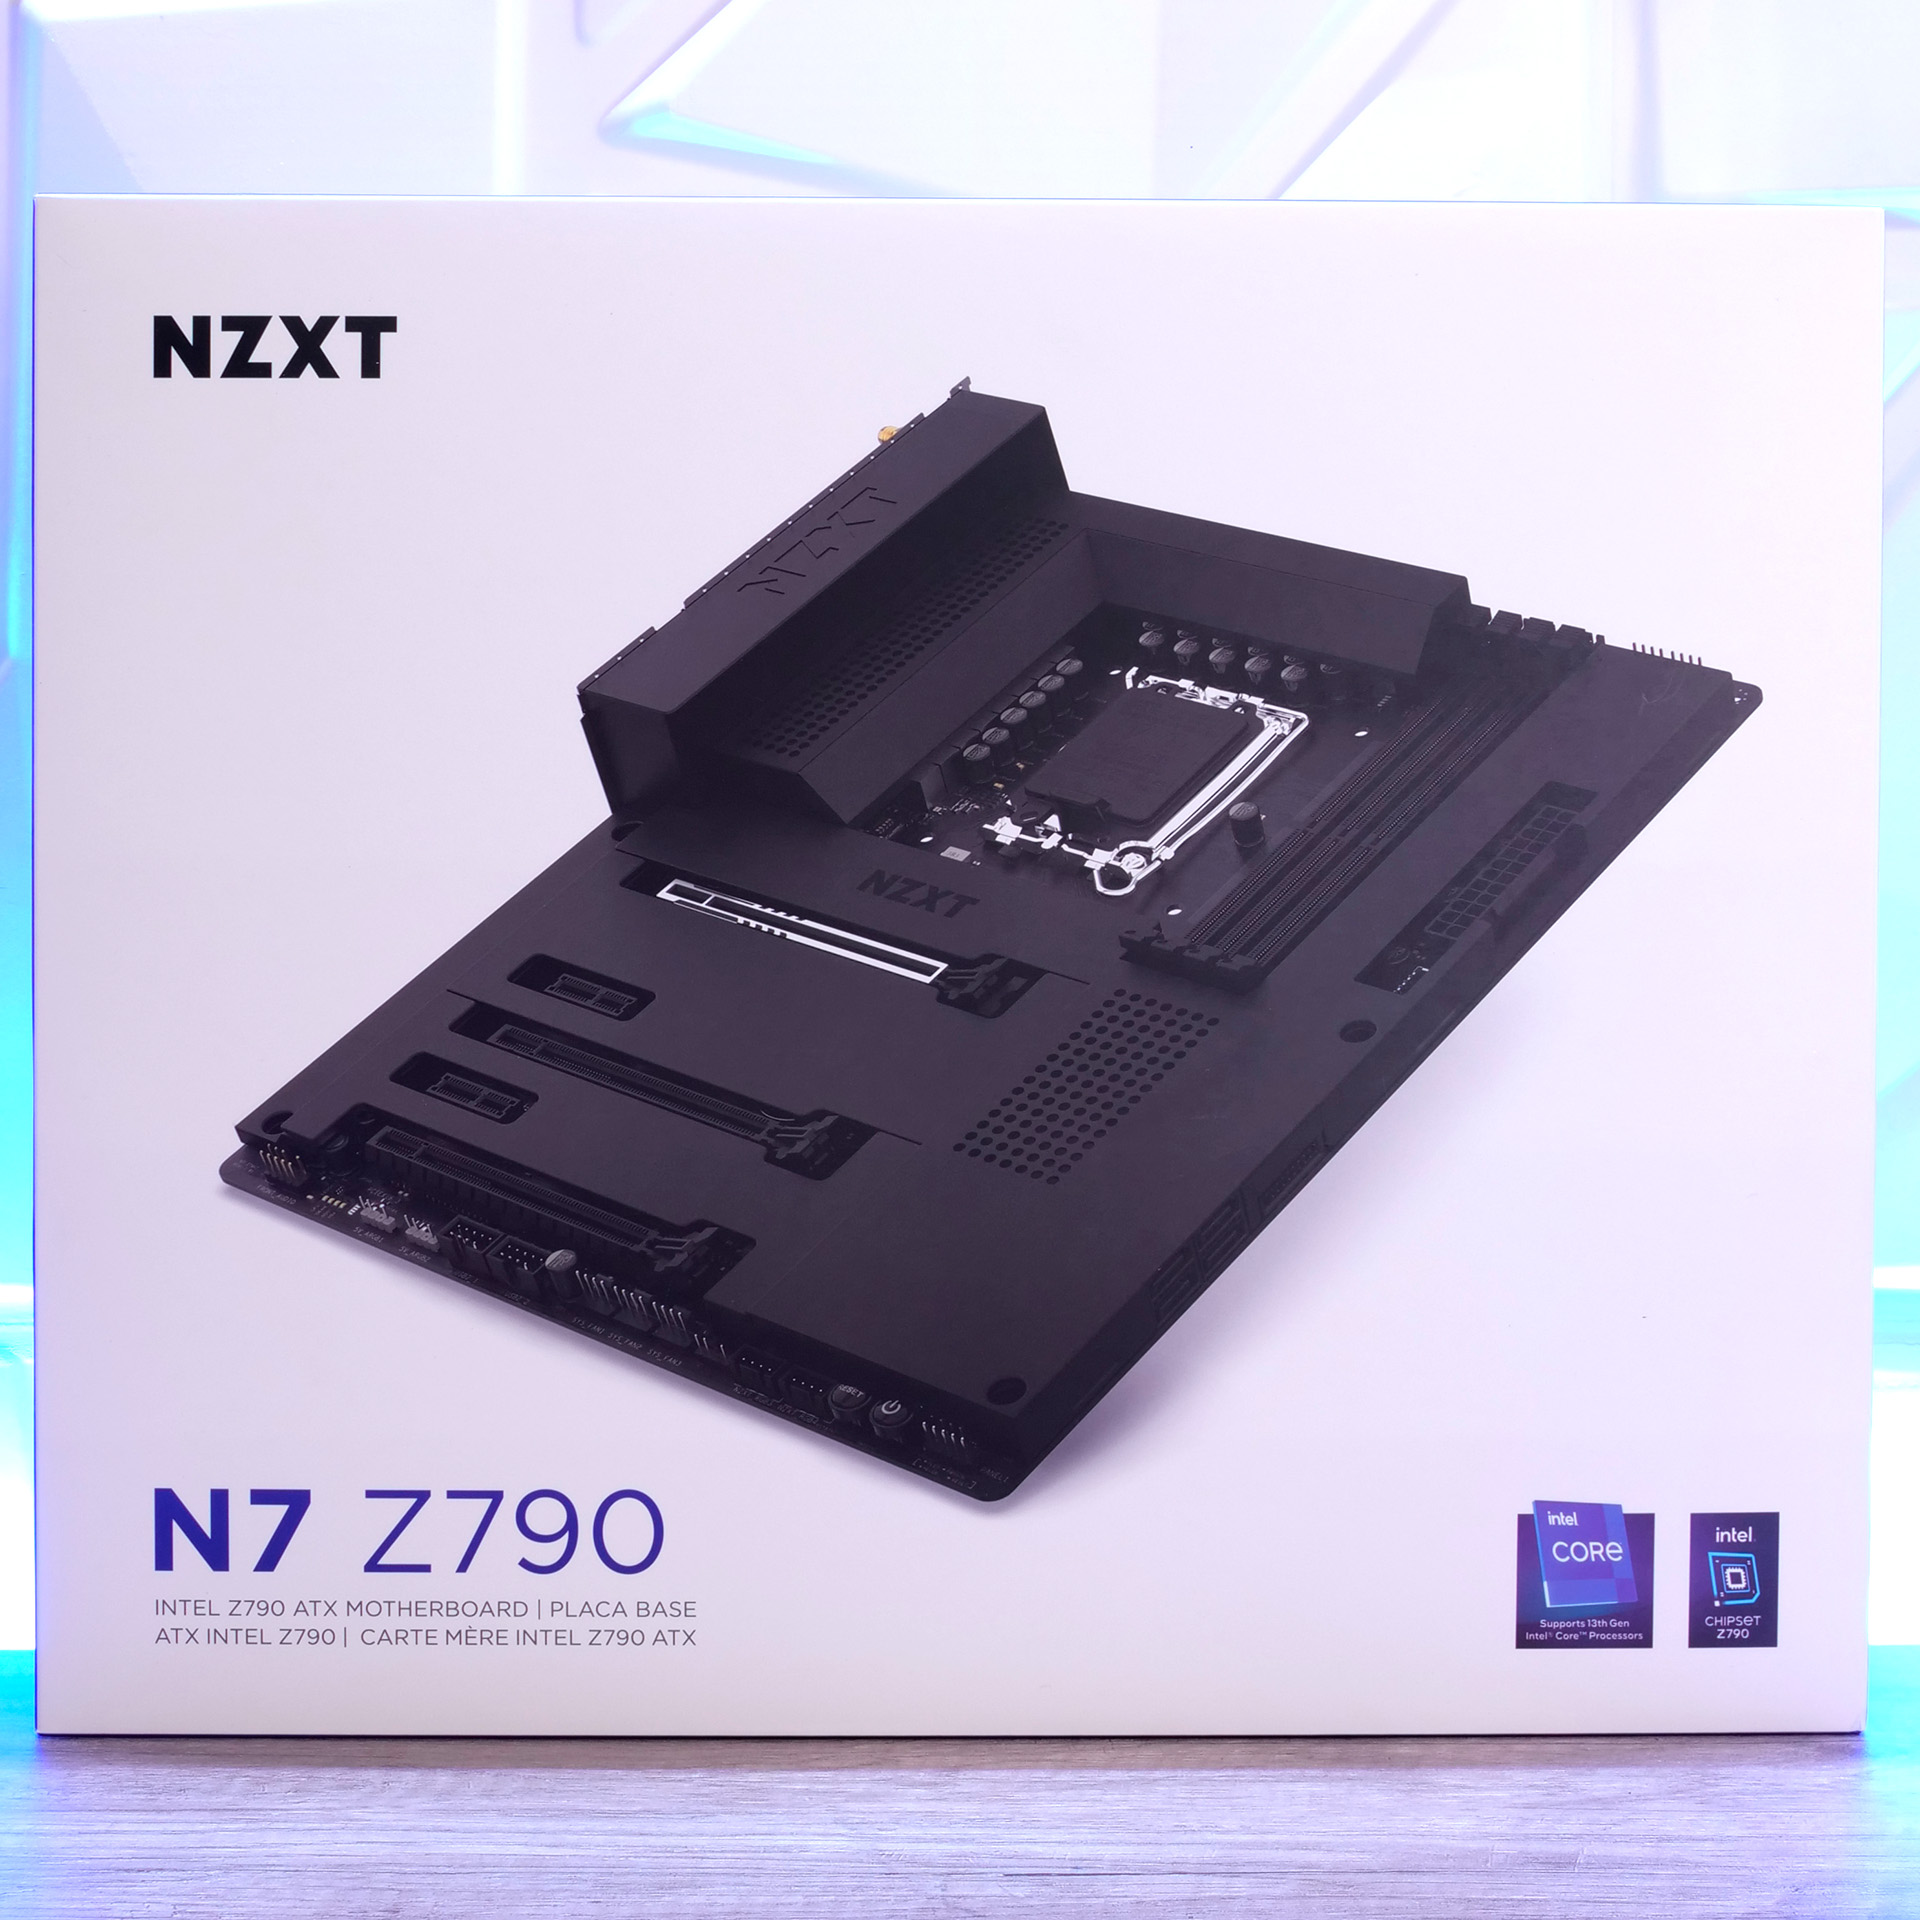 Nzxt N 7 Z 790 1